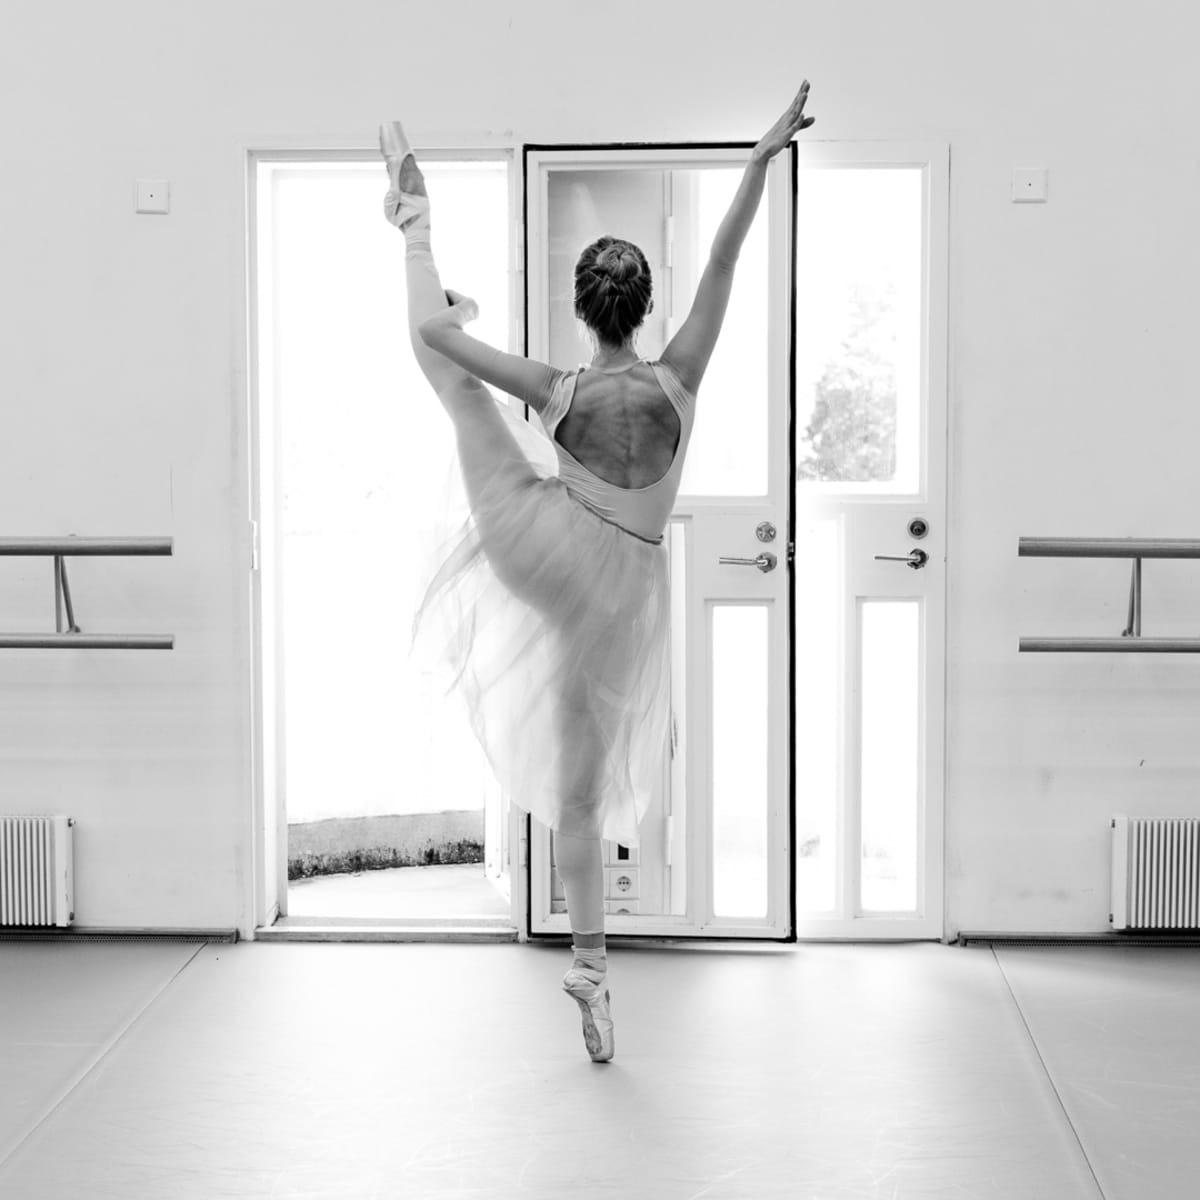 Balettitanssija Elina Miettisen arki New Yorkissa on unelma, joka on  vaatinut kovaa työtä — välillä on esiinnytty maailmantähdille, mutta myös  treenattu sairaana ja ylikunnossa